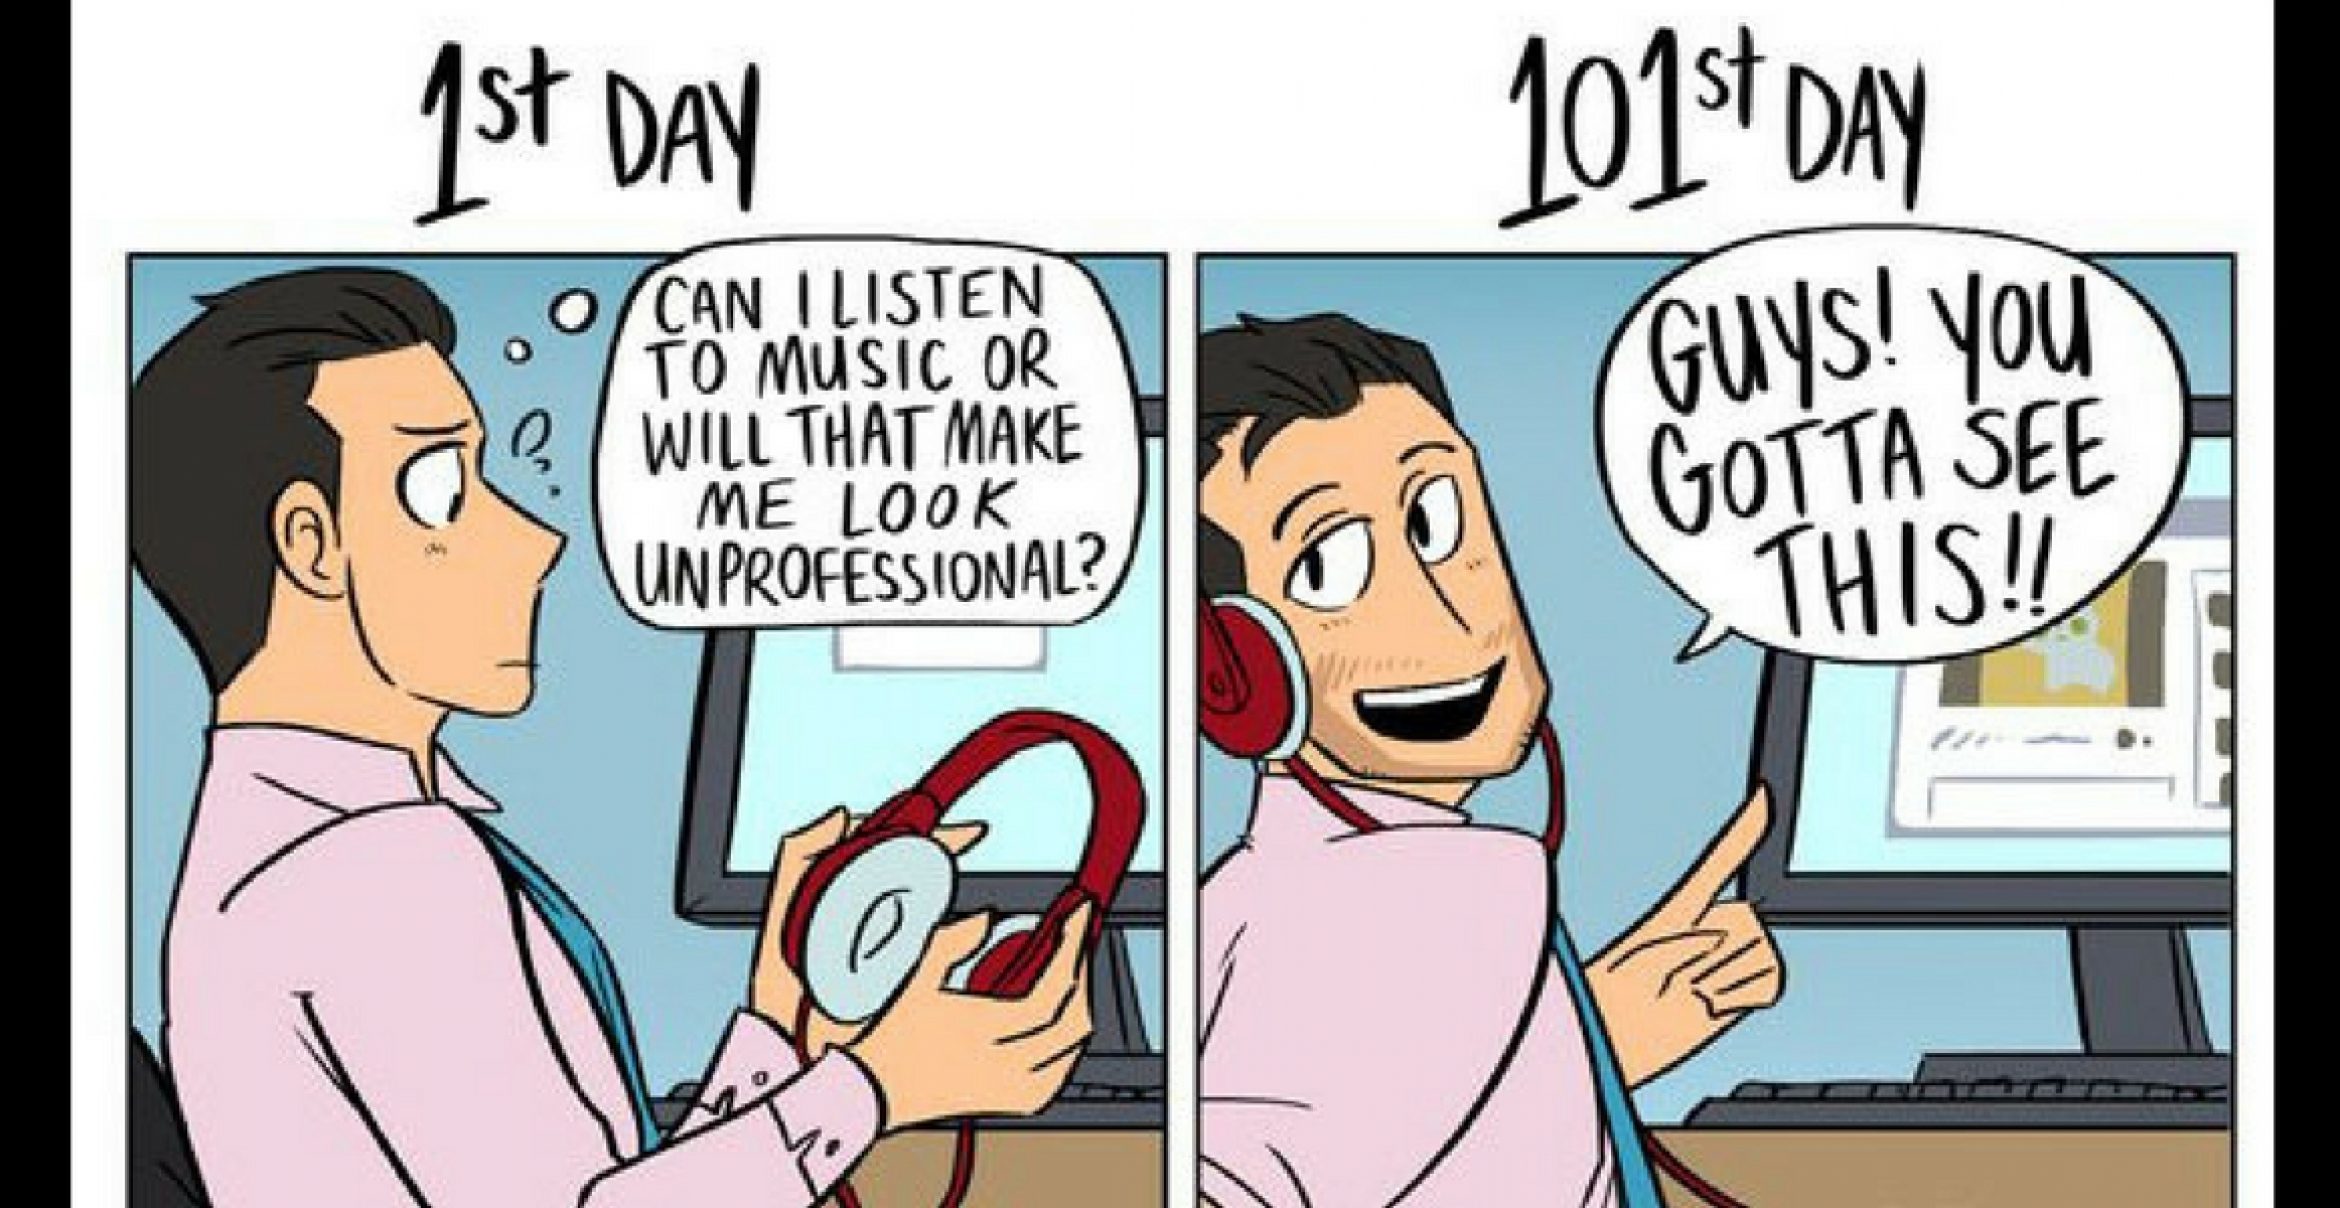 Diese Comics veranschaulichen, wie sich die Jobeinstellung in 100 Tagen verändert